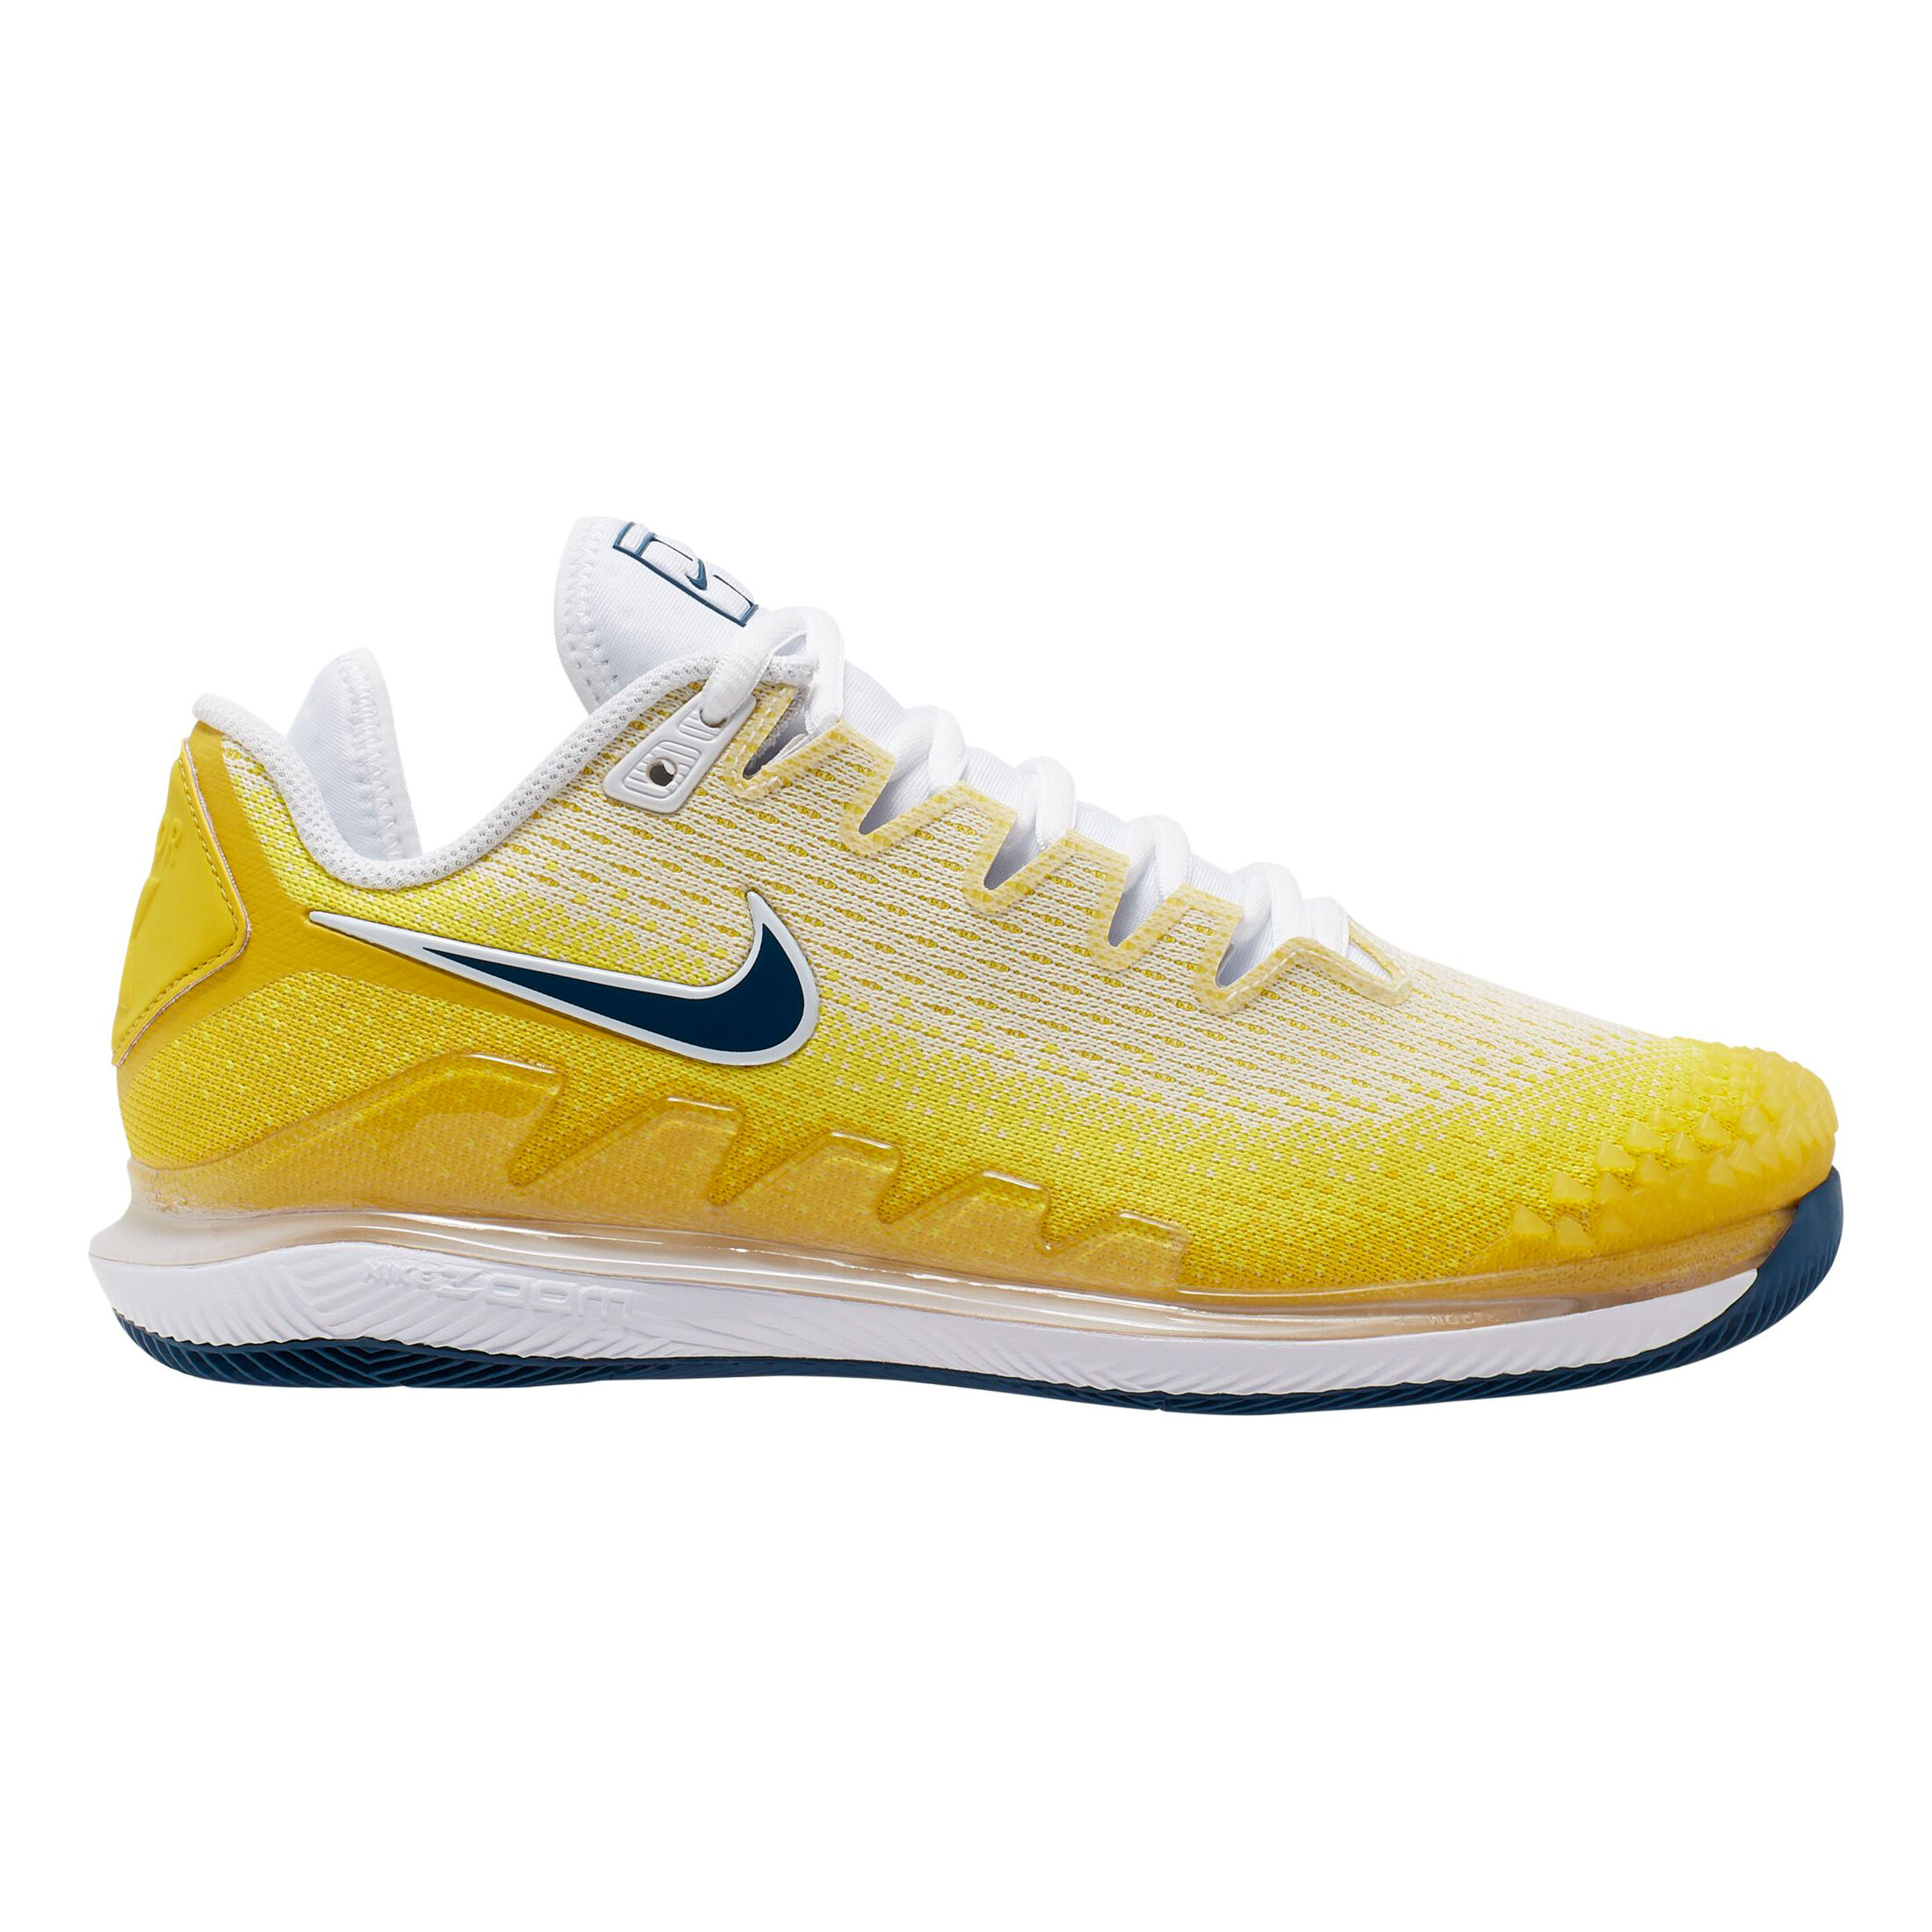 nike tennis shoes yellow